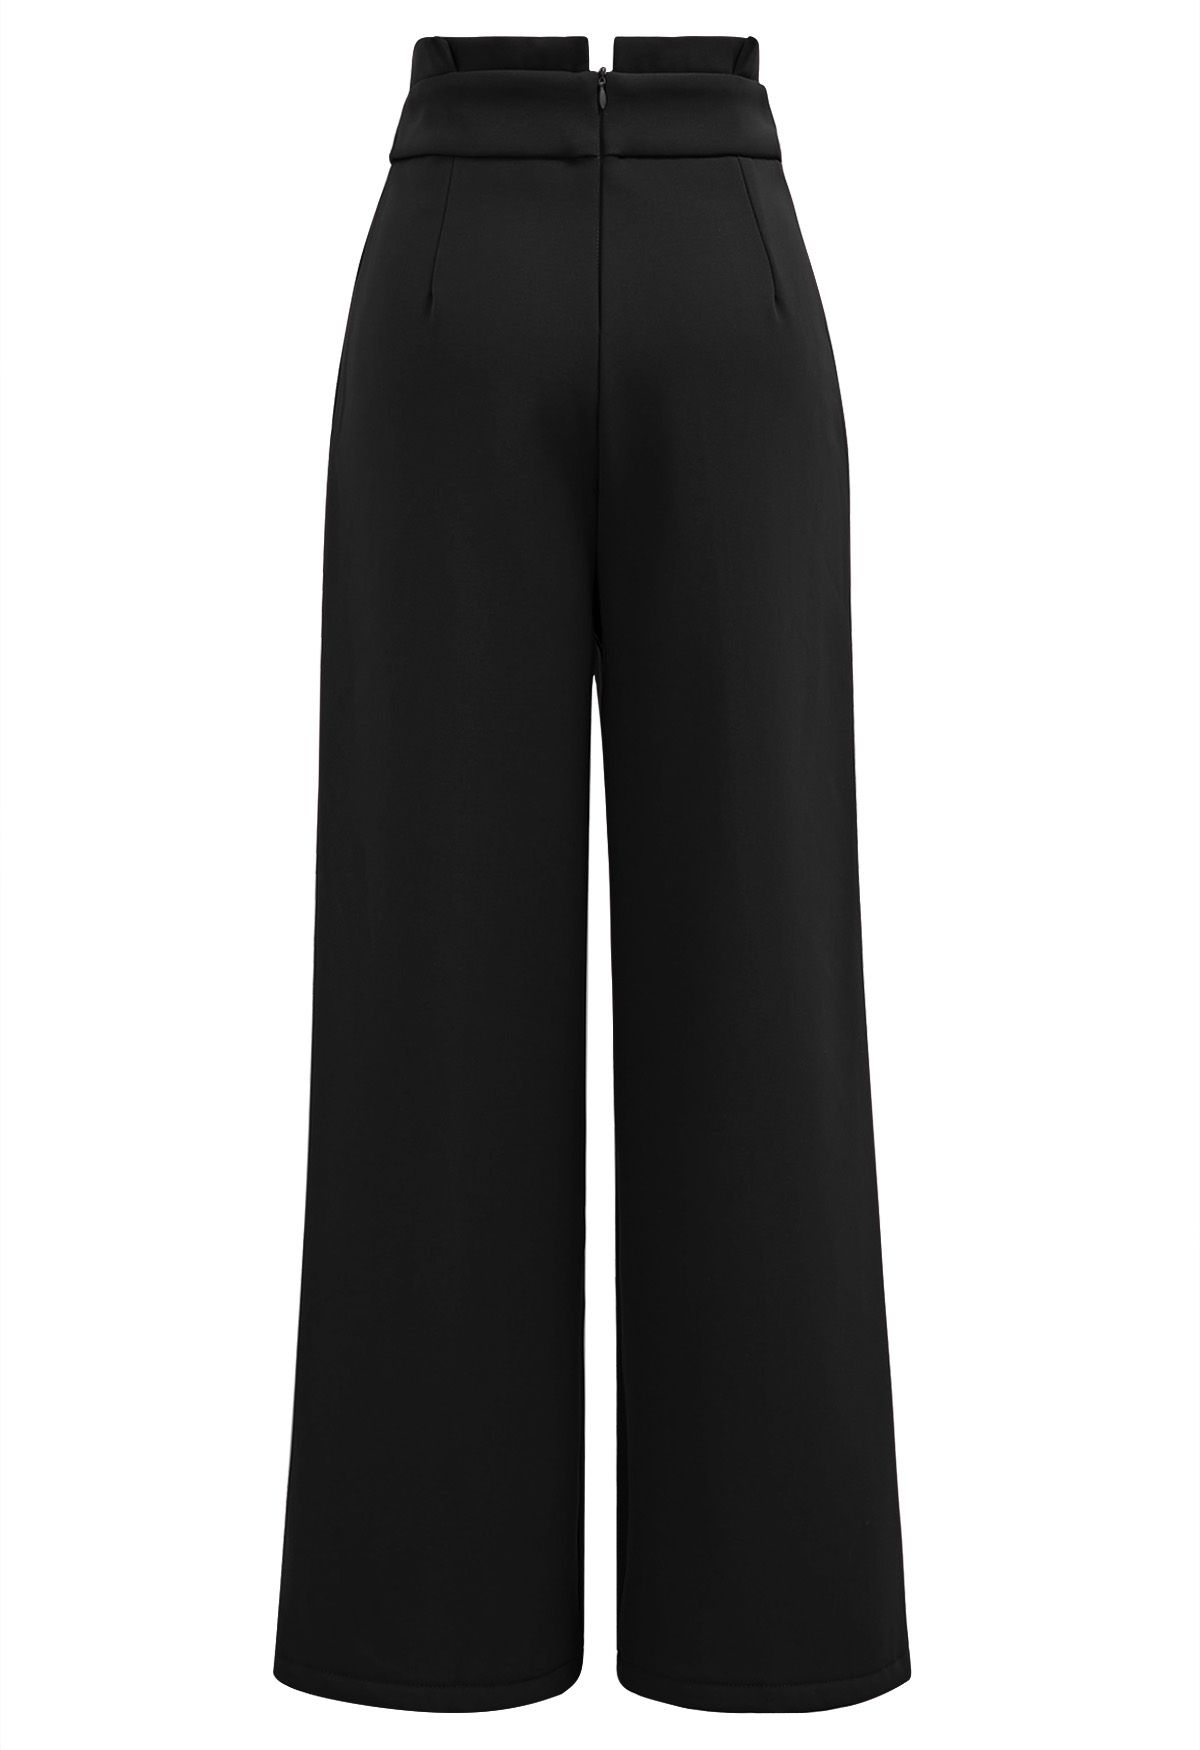 Pantalones rectos gruesos con cintura plisada en negro